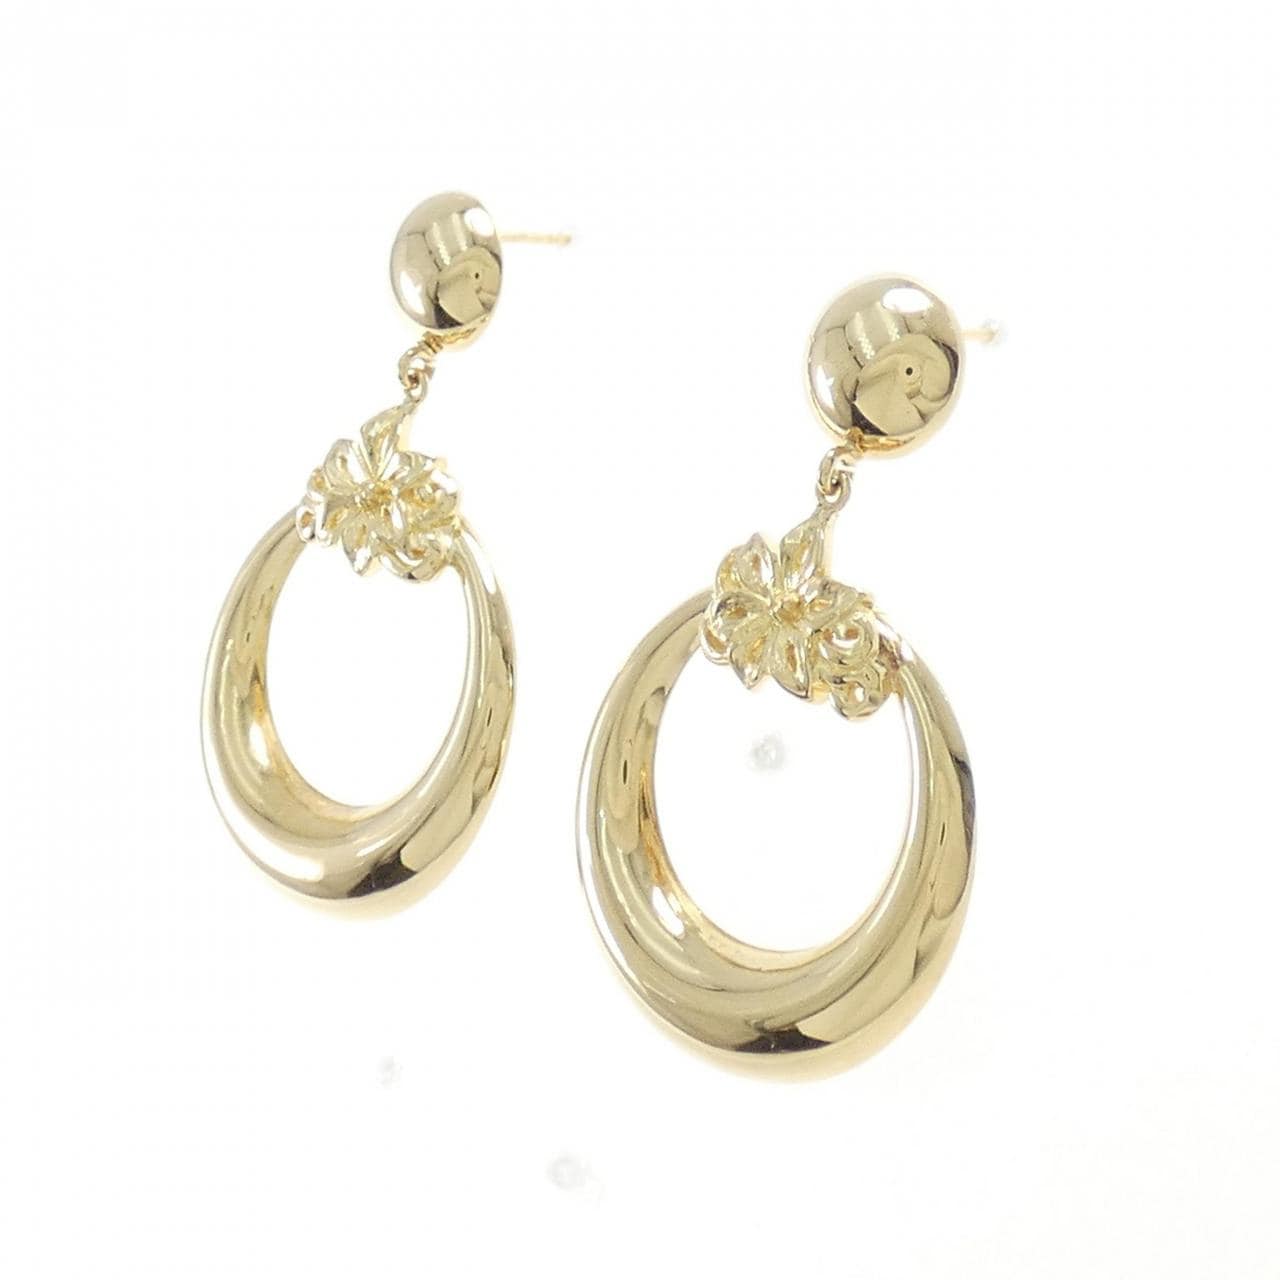 K18YG flower earrings